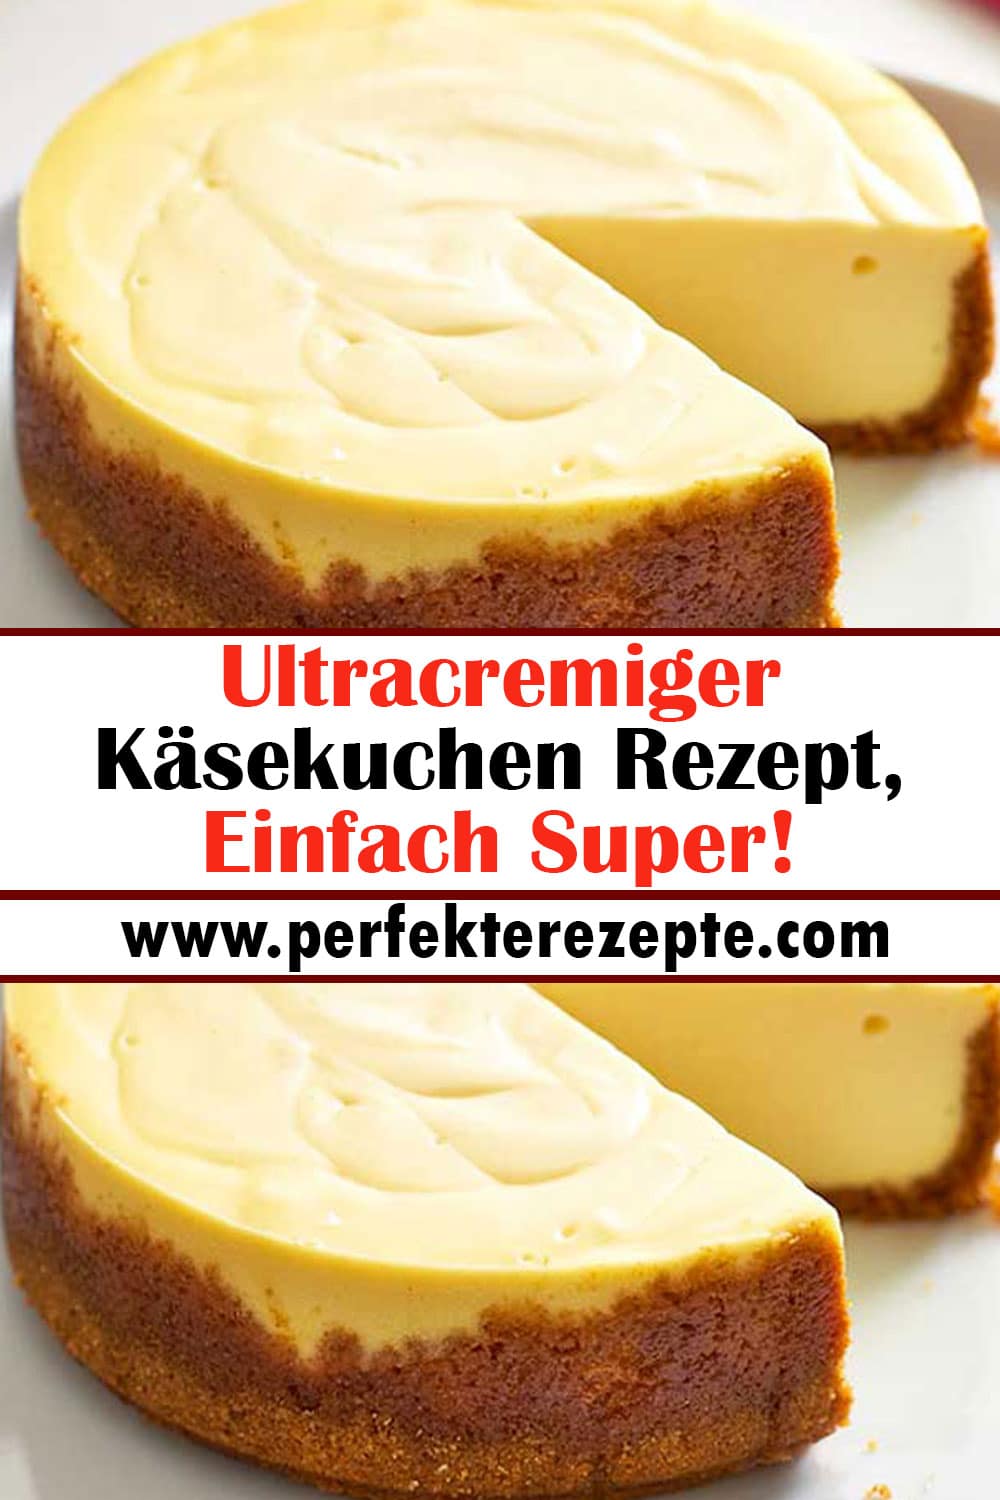 Ultracremiger Käsekuchen Rezept, Einfach Super!